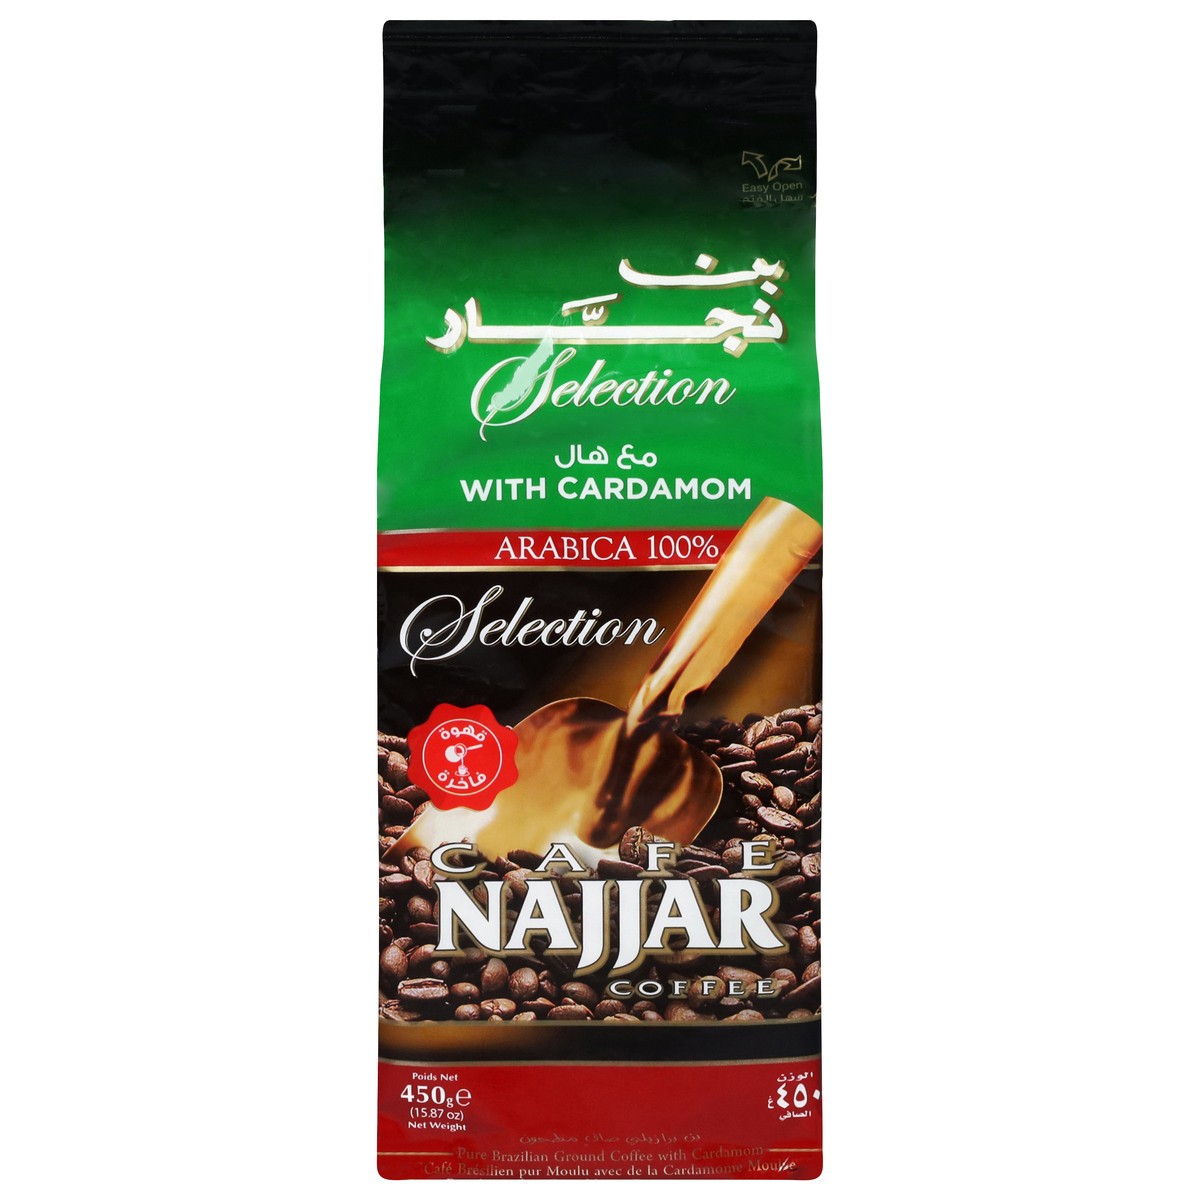 slide 1 of 12, Cafe Najjar Selection Pure Brazilian Ground Coffee with Cardamon 15.87 oz, 15.87 oz